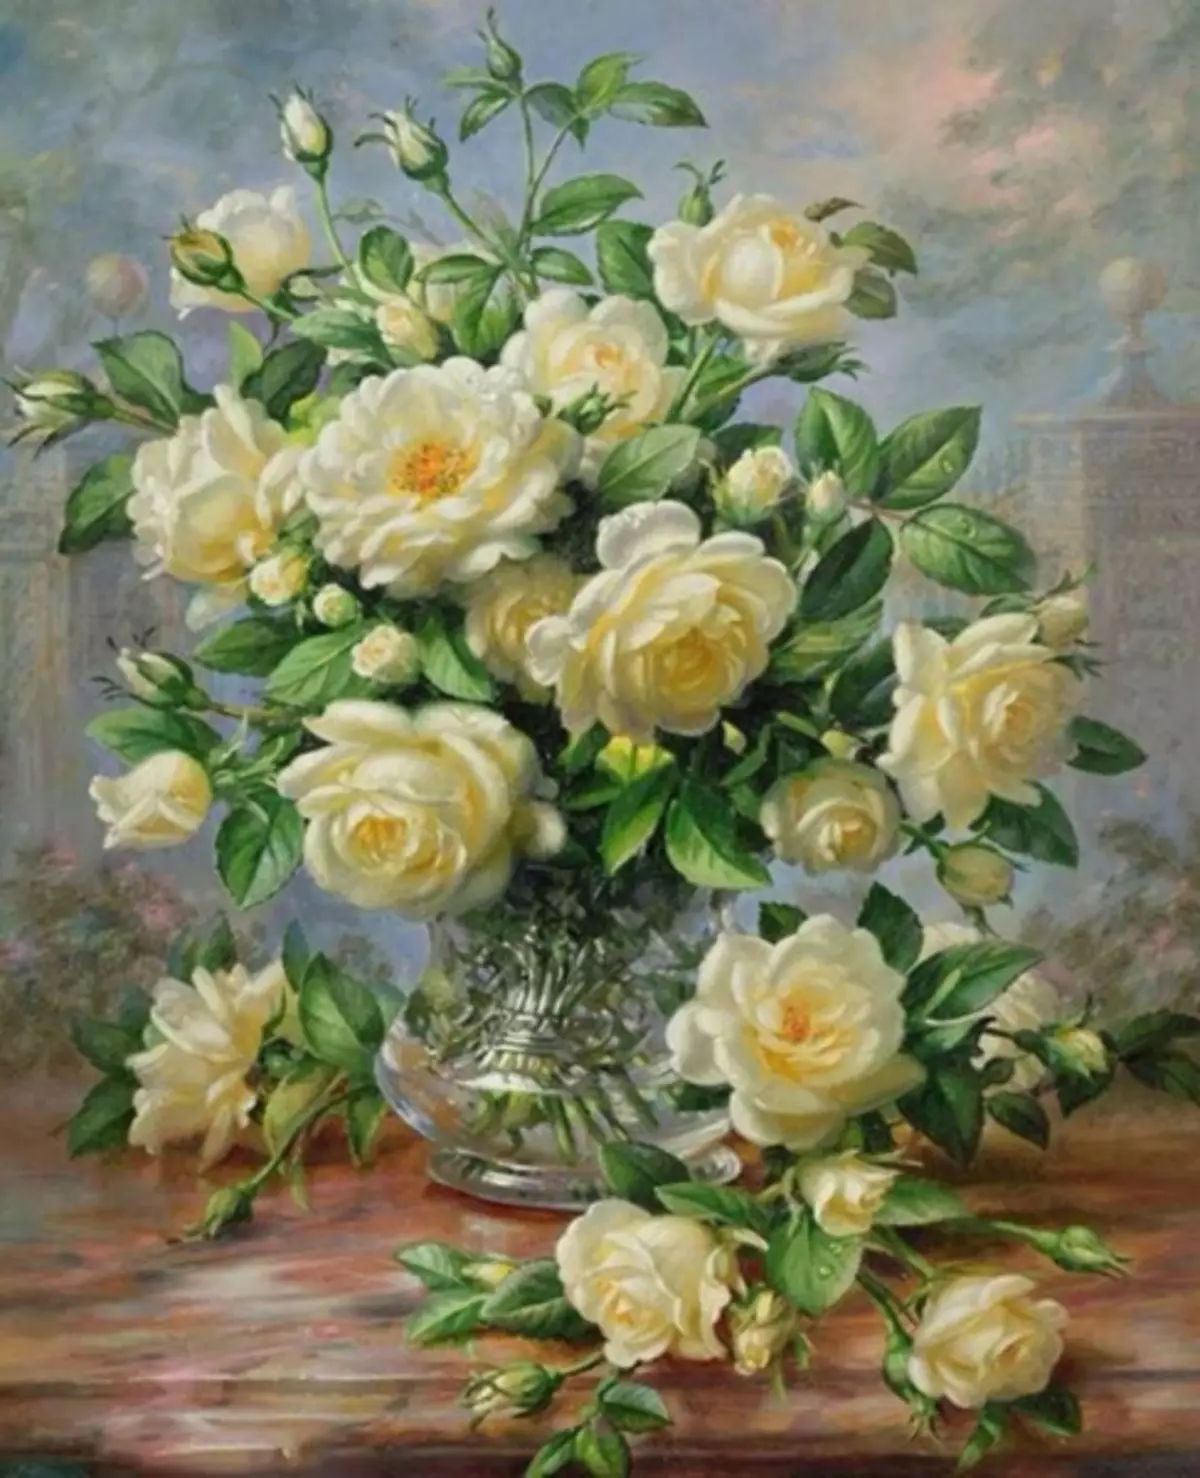 Rose Cross abroiderry: Seti i totonu o se ato, paepae bouquet i se vase, teine ​​mo amata, triptych ma pepe